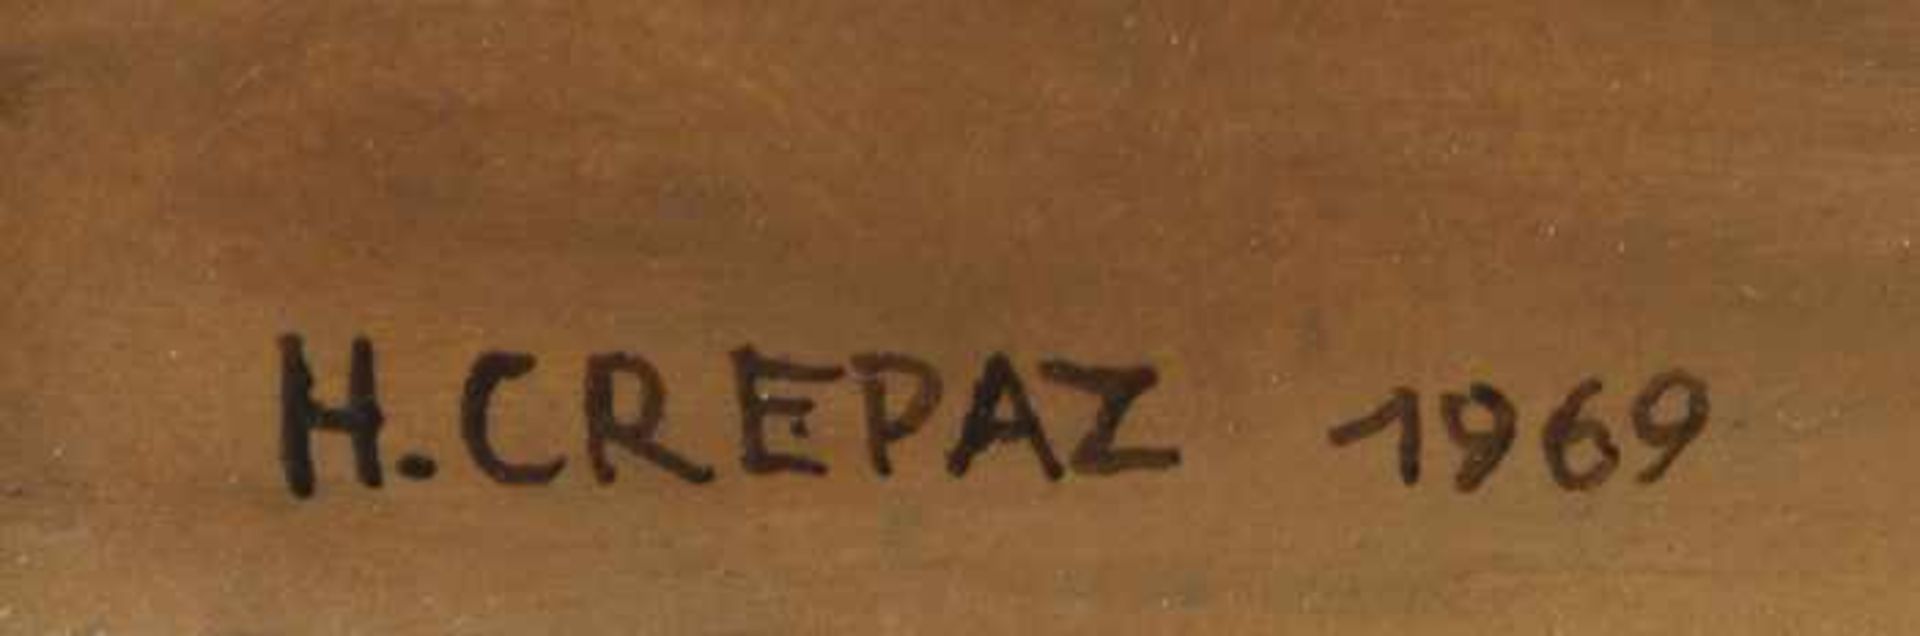 Crepaz, Hans Ohne Titel, 1969 Öl auf Holz Signiert und datiert links unten 20 x 25 cm gerahmt - Bild 4 aus 4